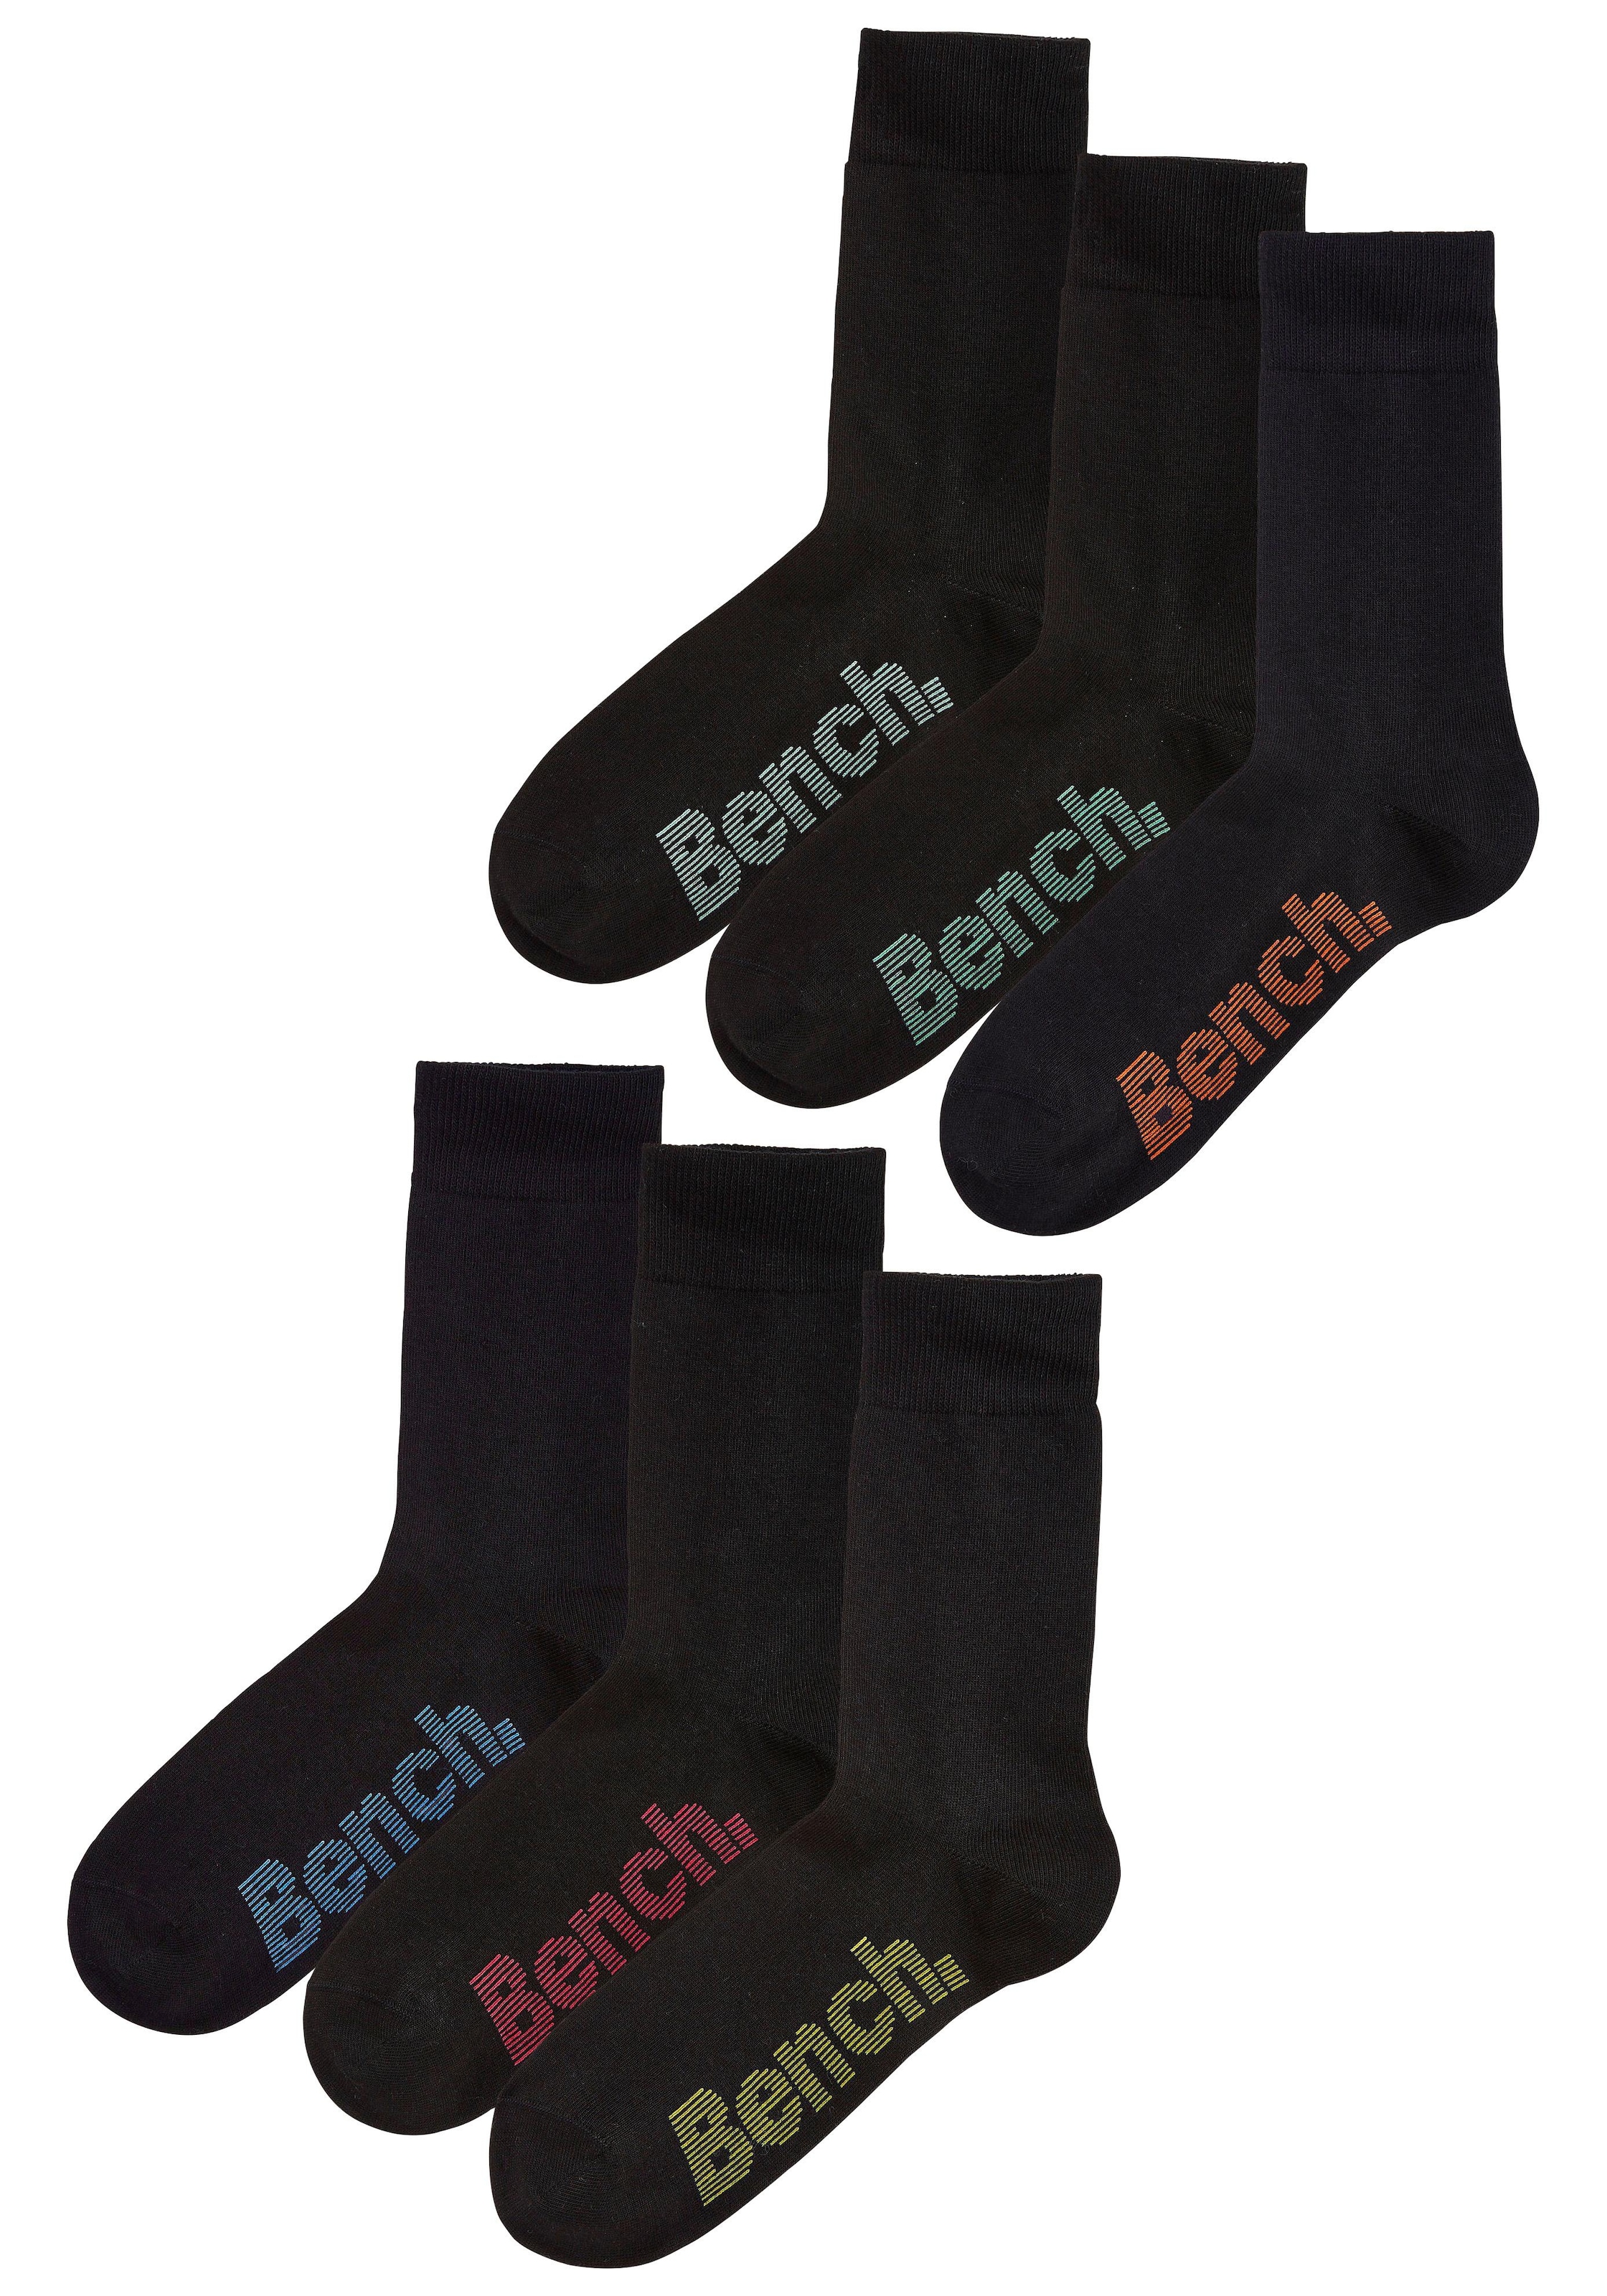 Socken, (Box, 6 Paar), mit verschiedenfarbigen Logos